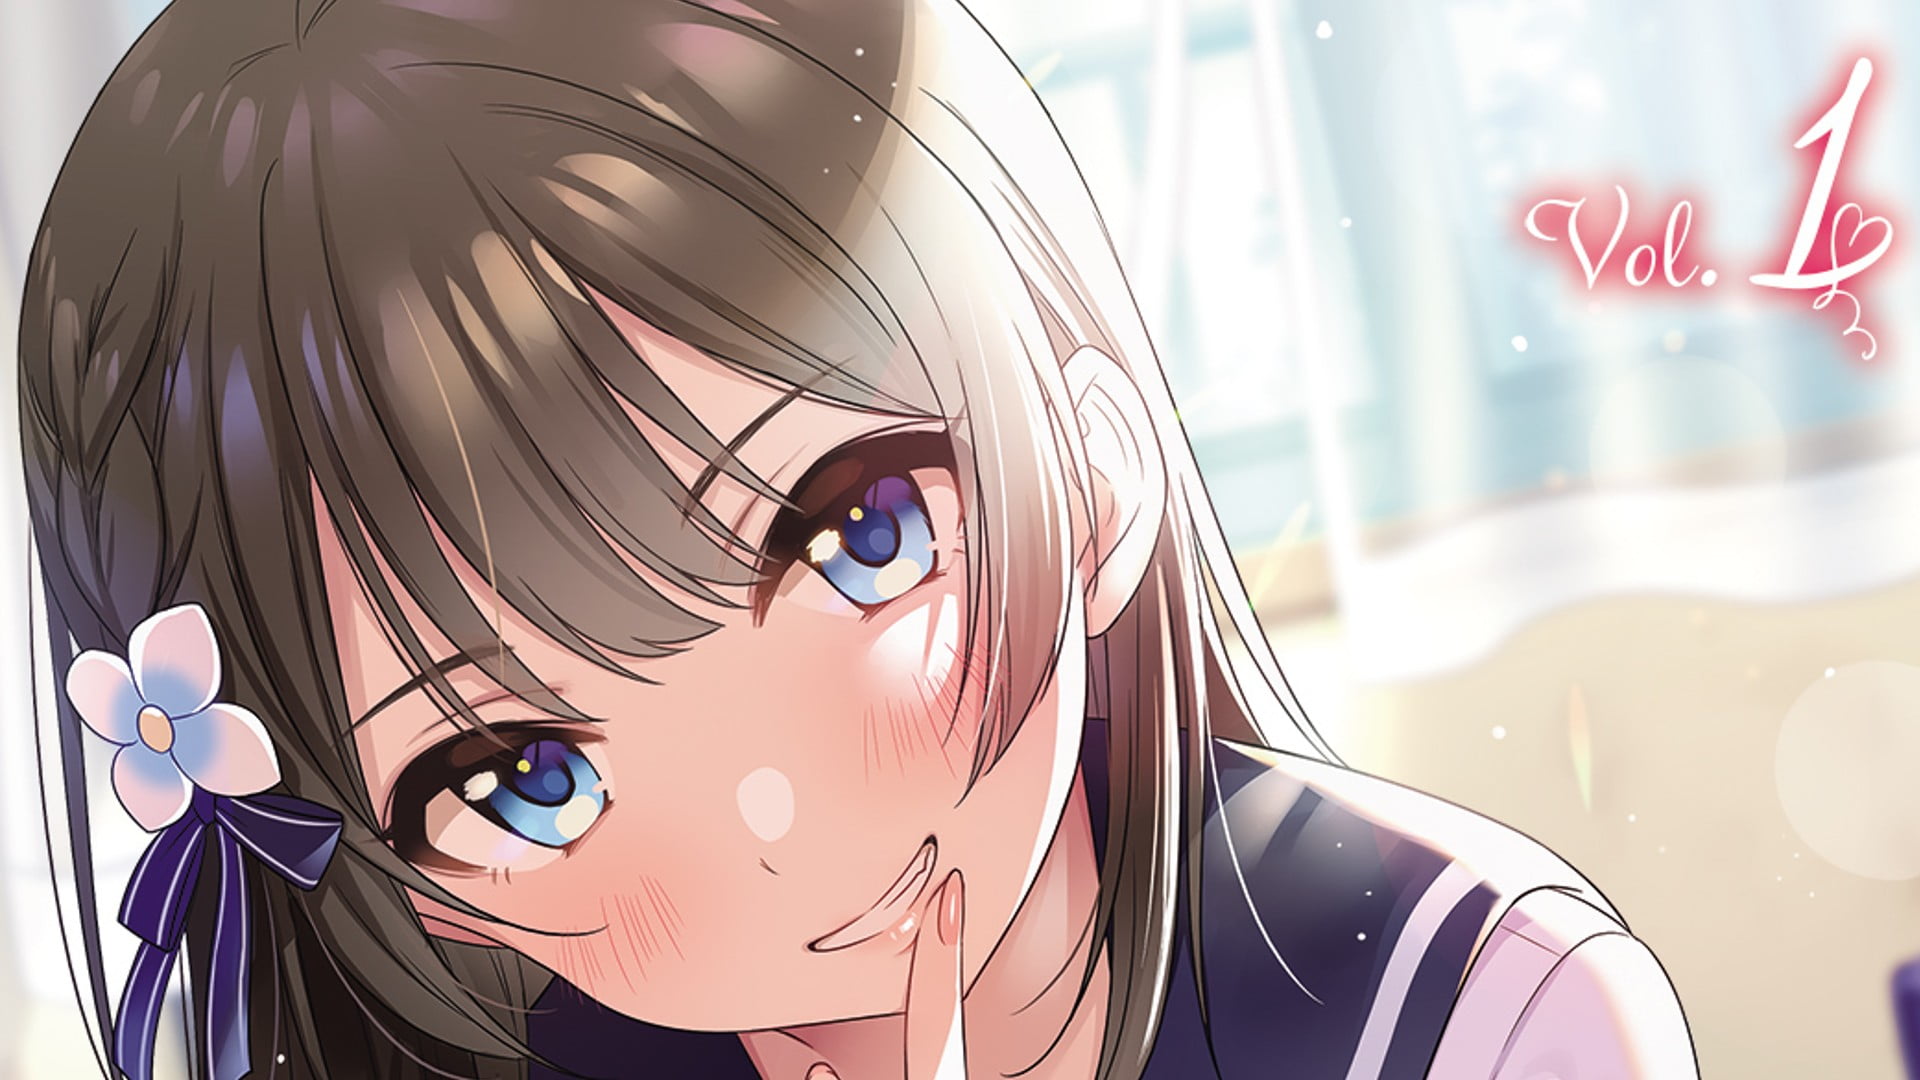 I Kissed my Girlfriend's Little Sister?! (Light Novel) Manga